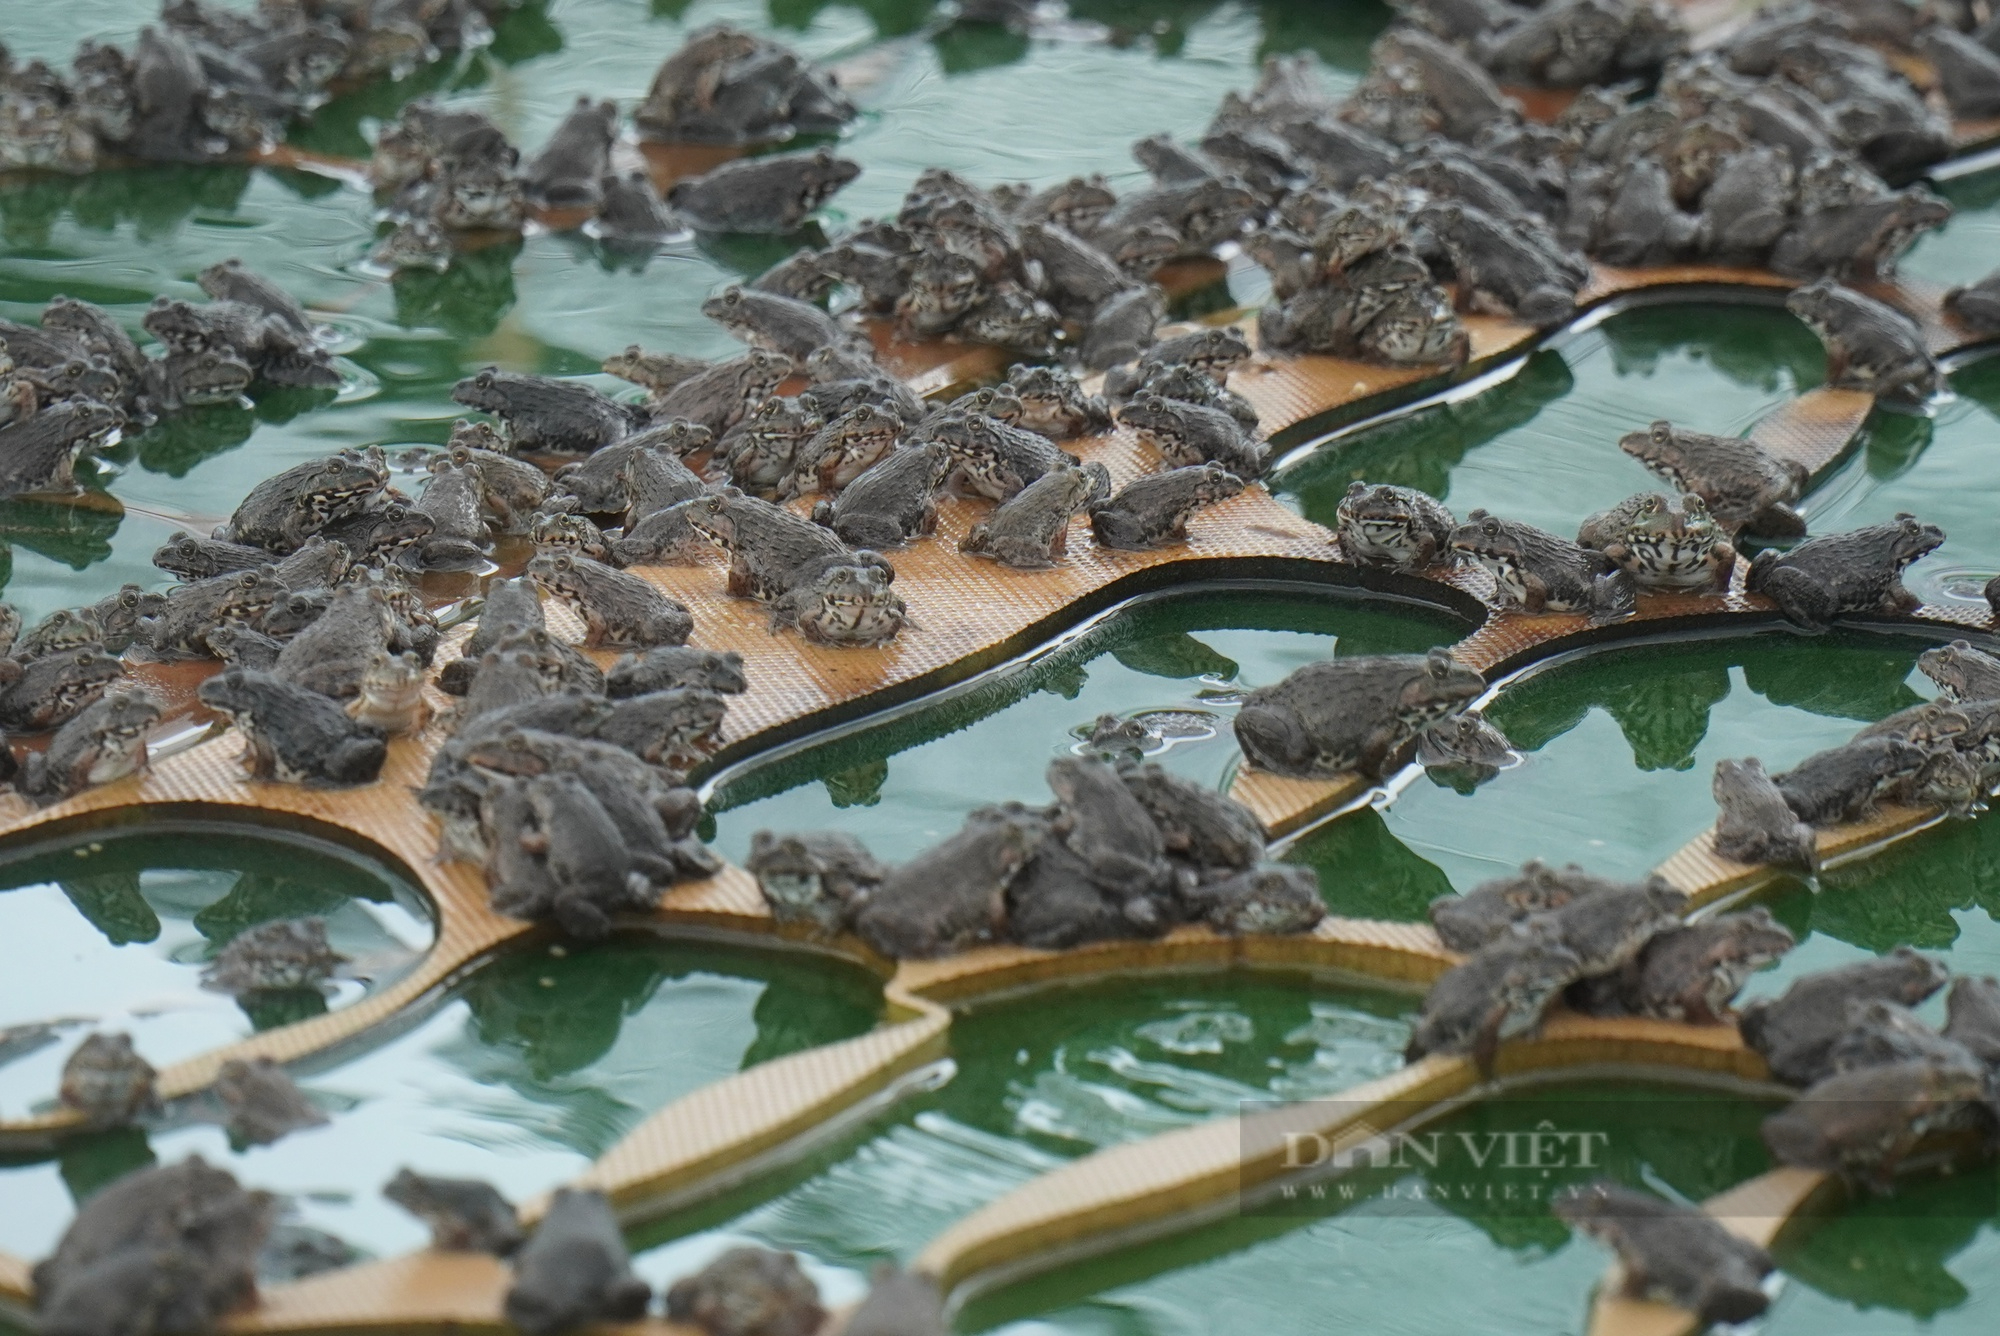 Nuôi ếch ghép với cá trên 2 mẫu ao, nông dân Bắc Ninh thu lời 1 tỷ đồng/năm - Ảnh 4.